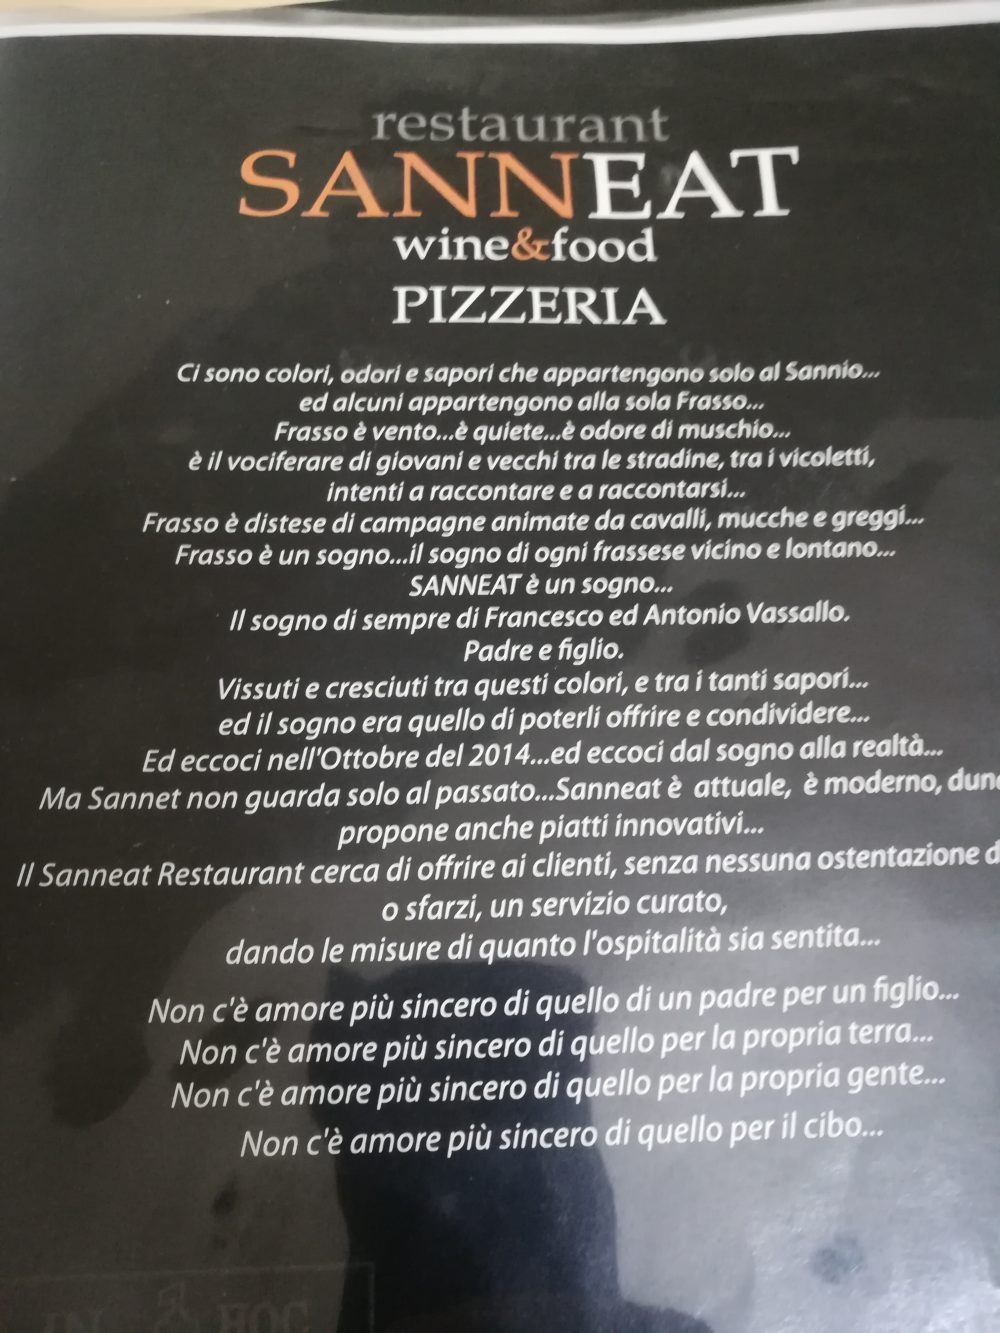 Sanneat - Wine & Food, La filosofia del locale